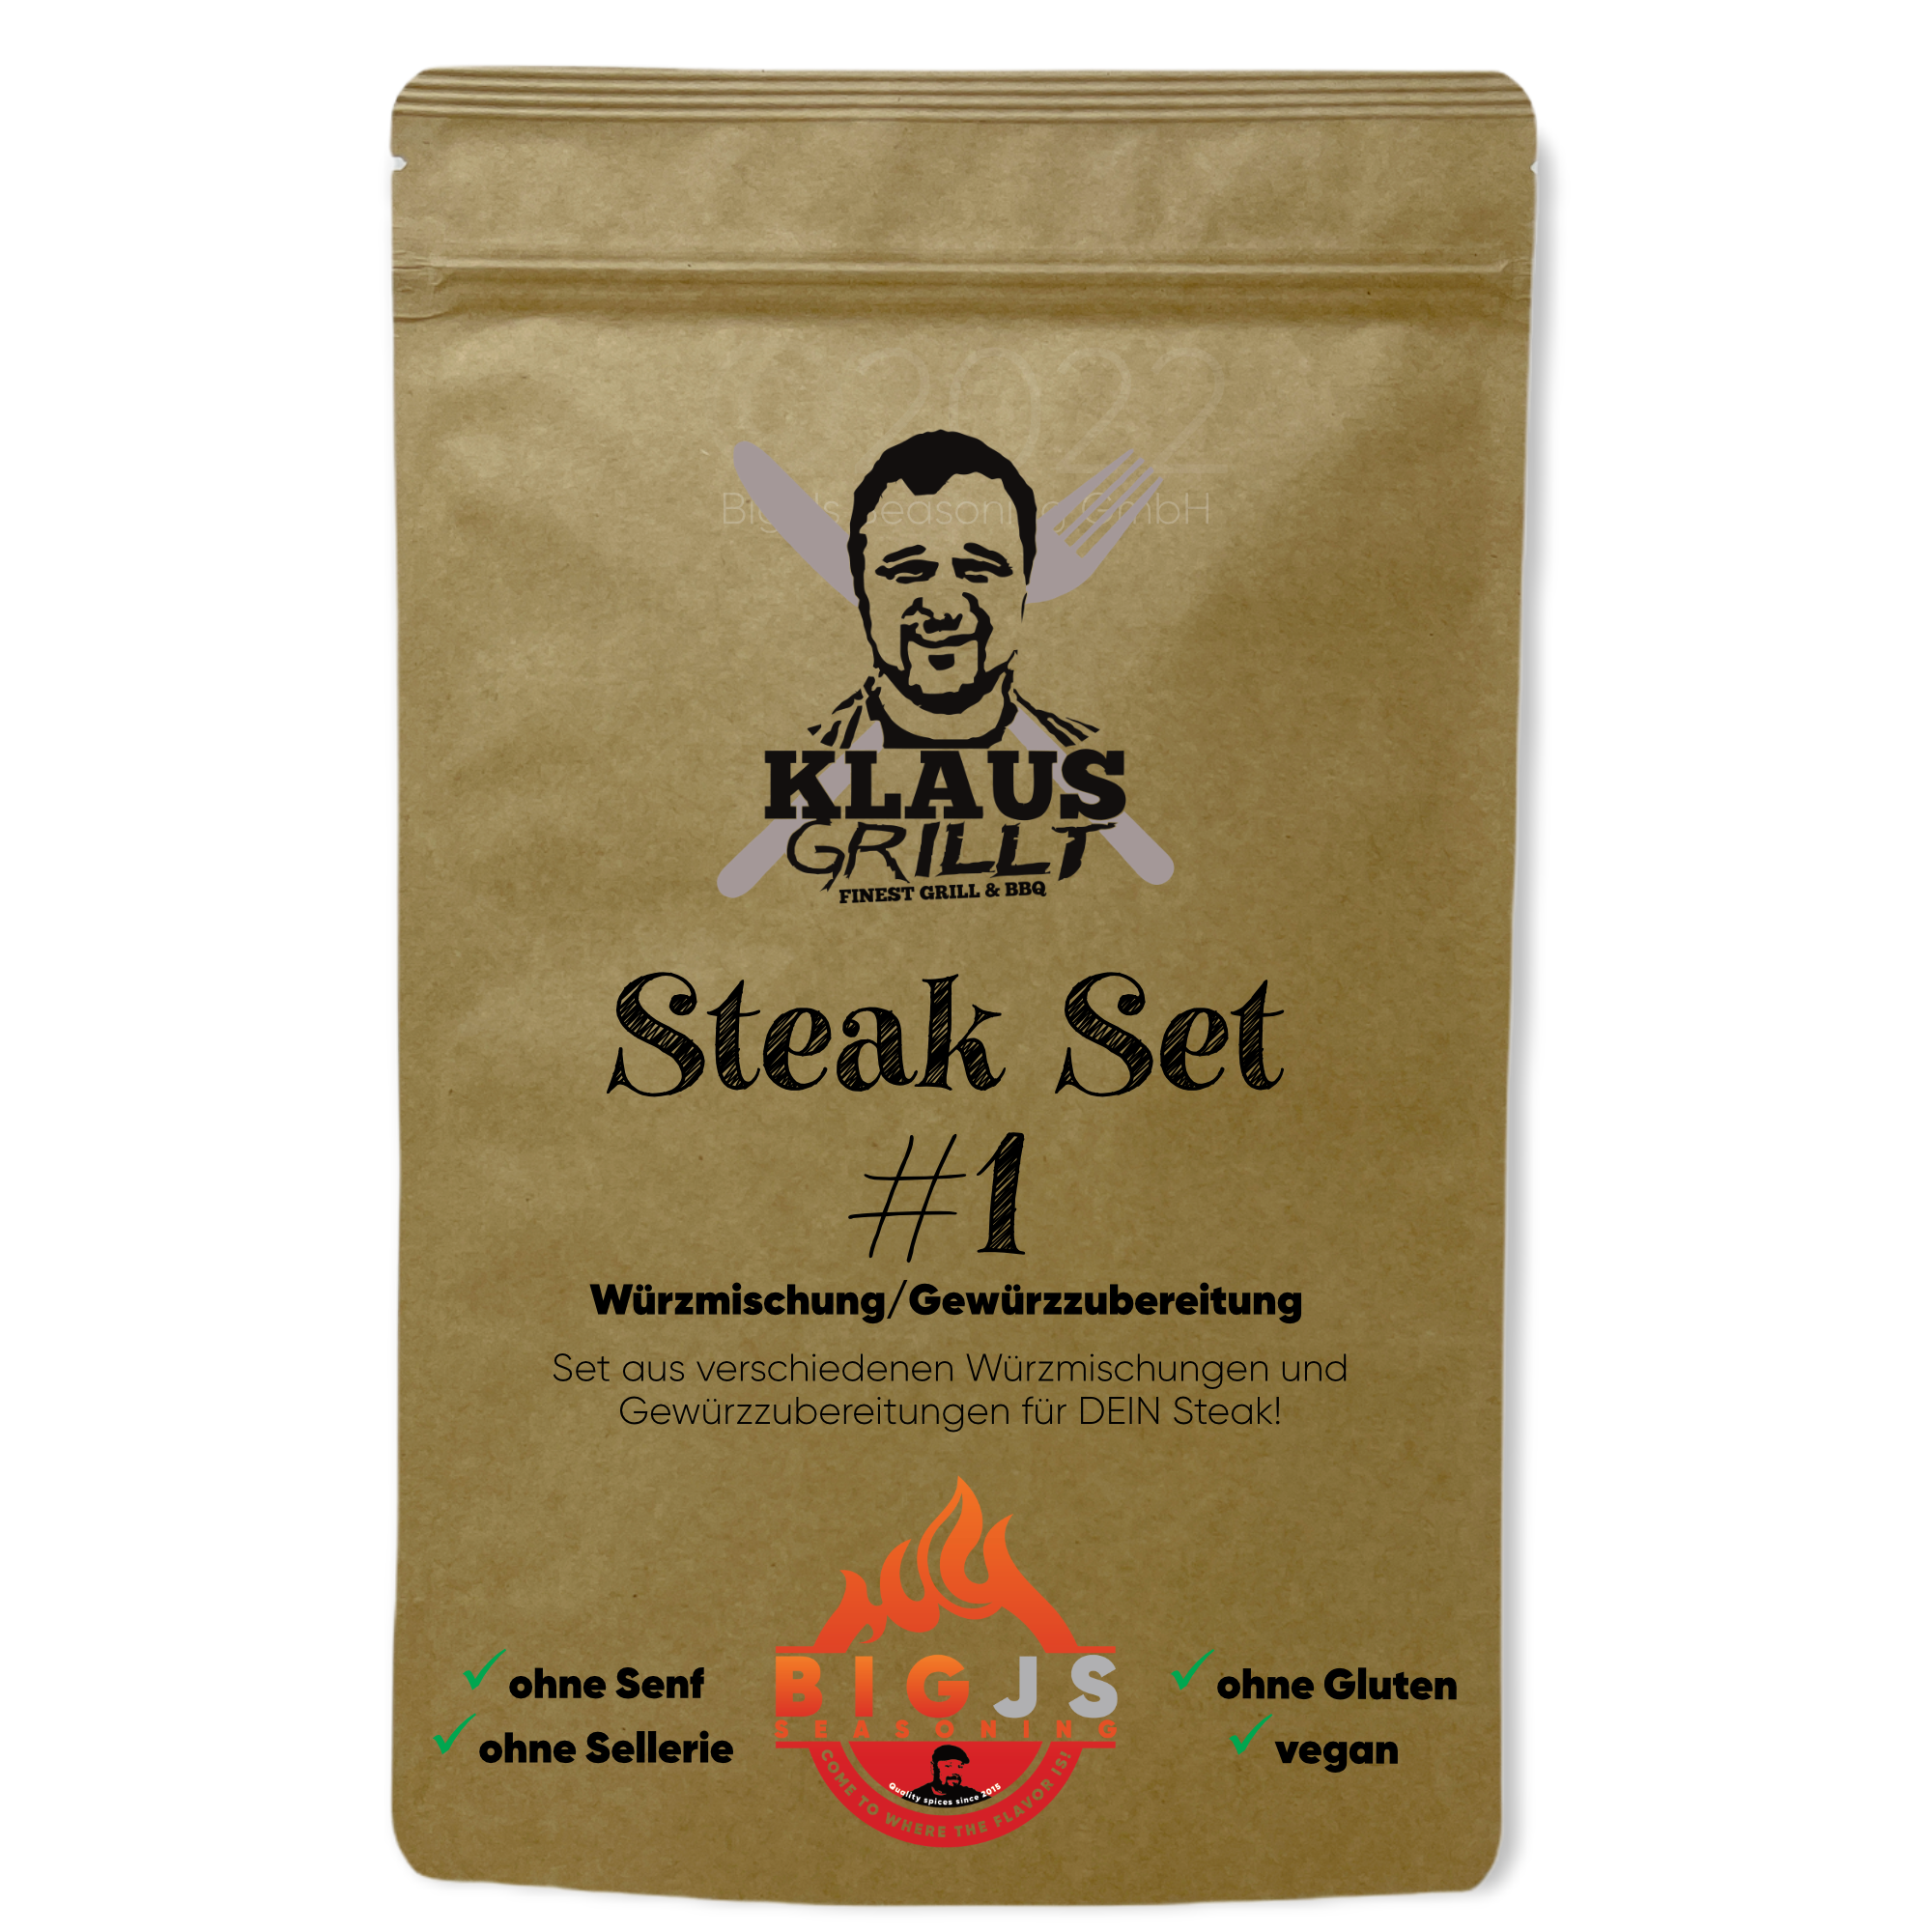 Klaus grillt Steak Set #1, 4x50g Beutel